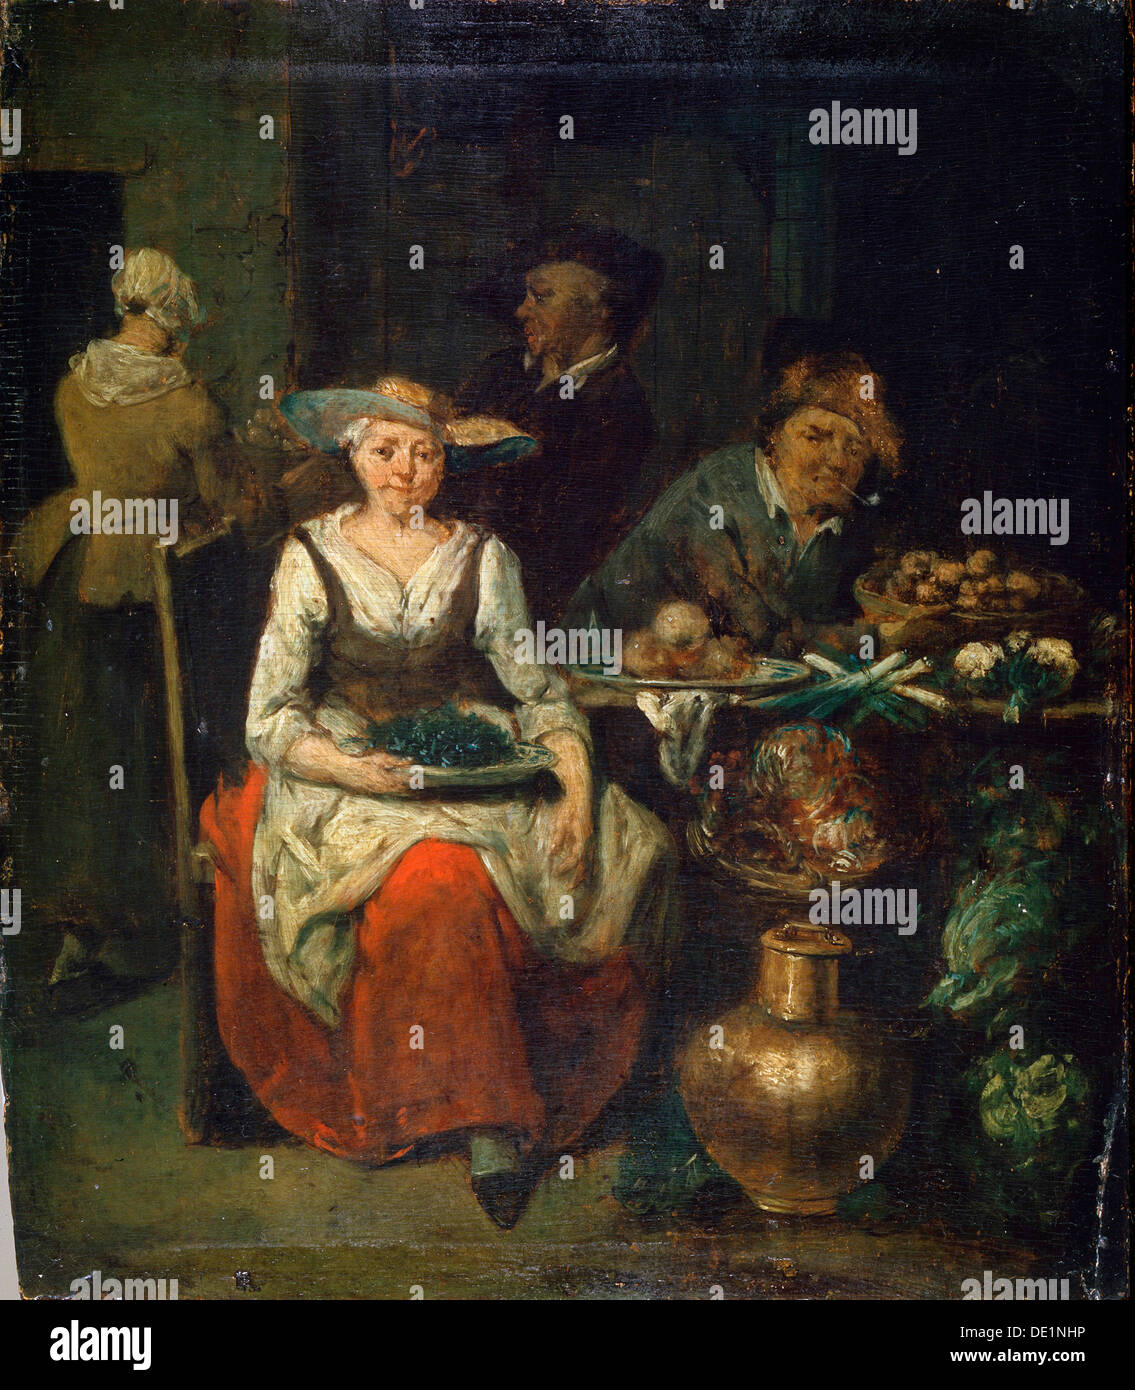 "A un fruttivendolo', c1700-1730. Pittura fiamminga Artista: Jan Battista Lambrechts Foto Stock